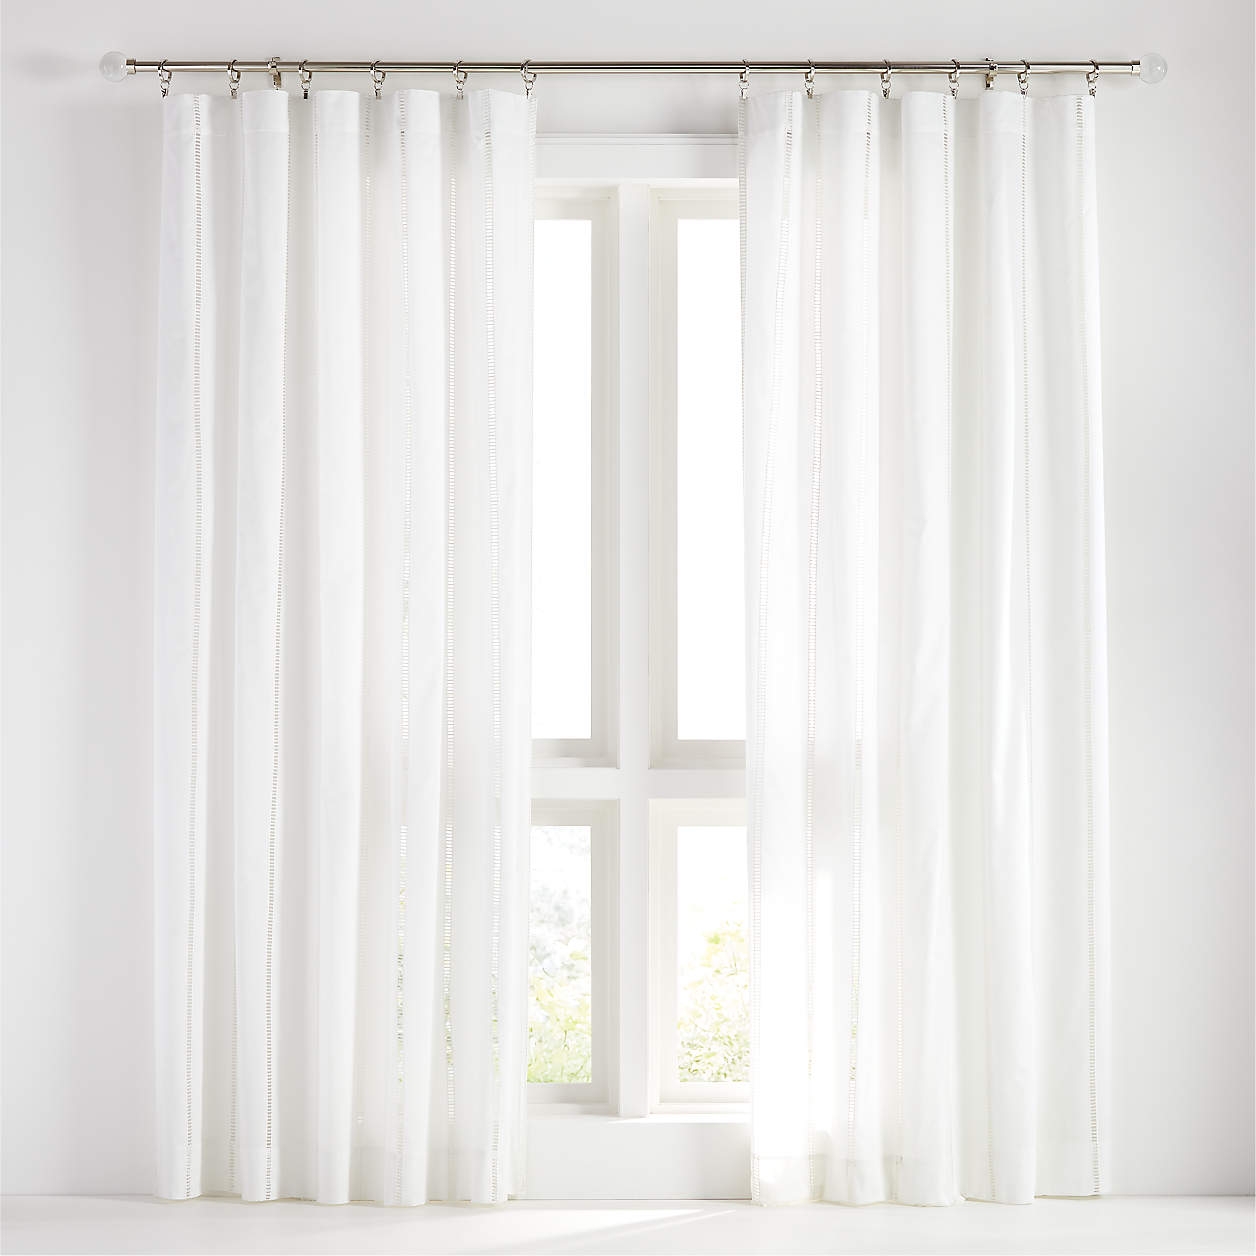 Eyelet White Curtain Panel 50"x108" - Image 0